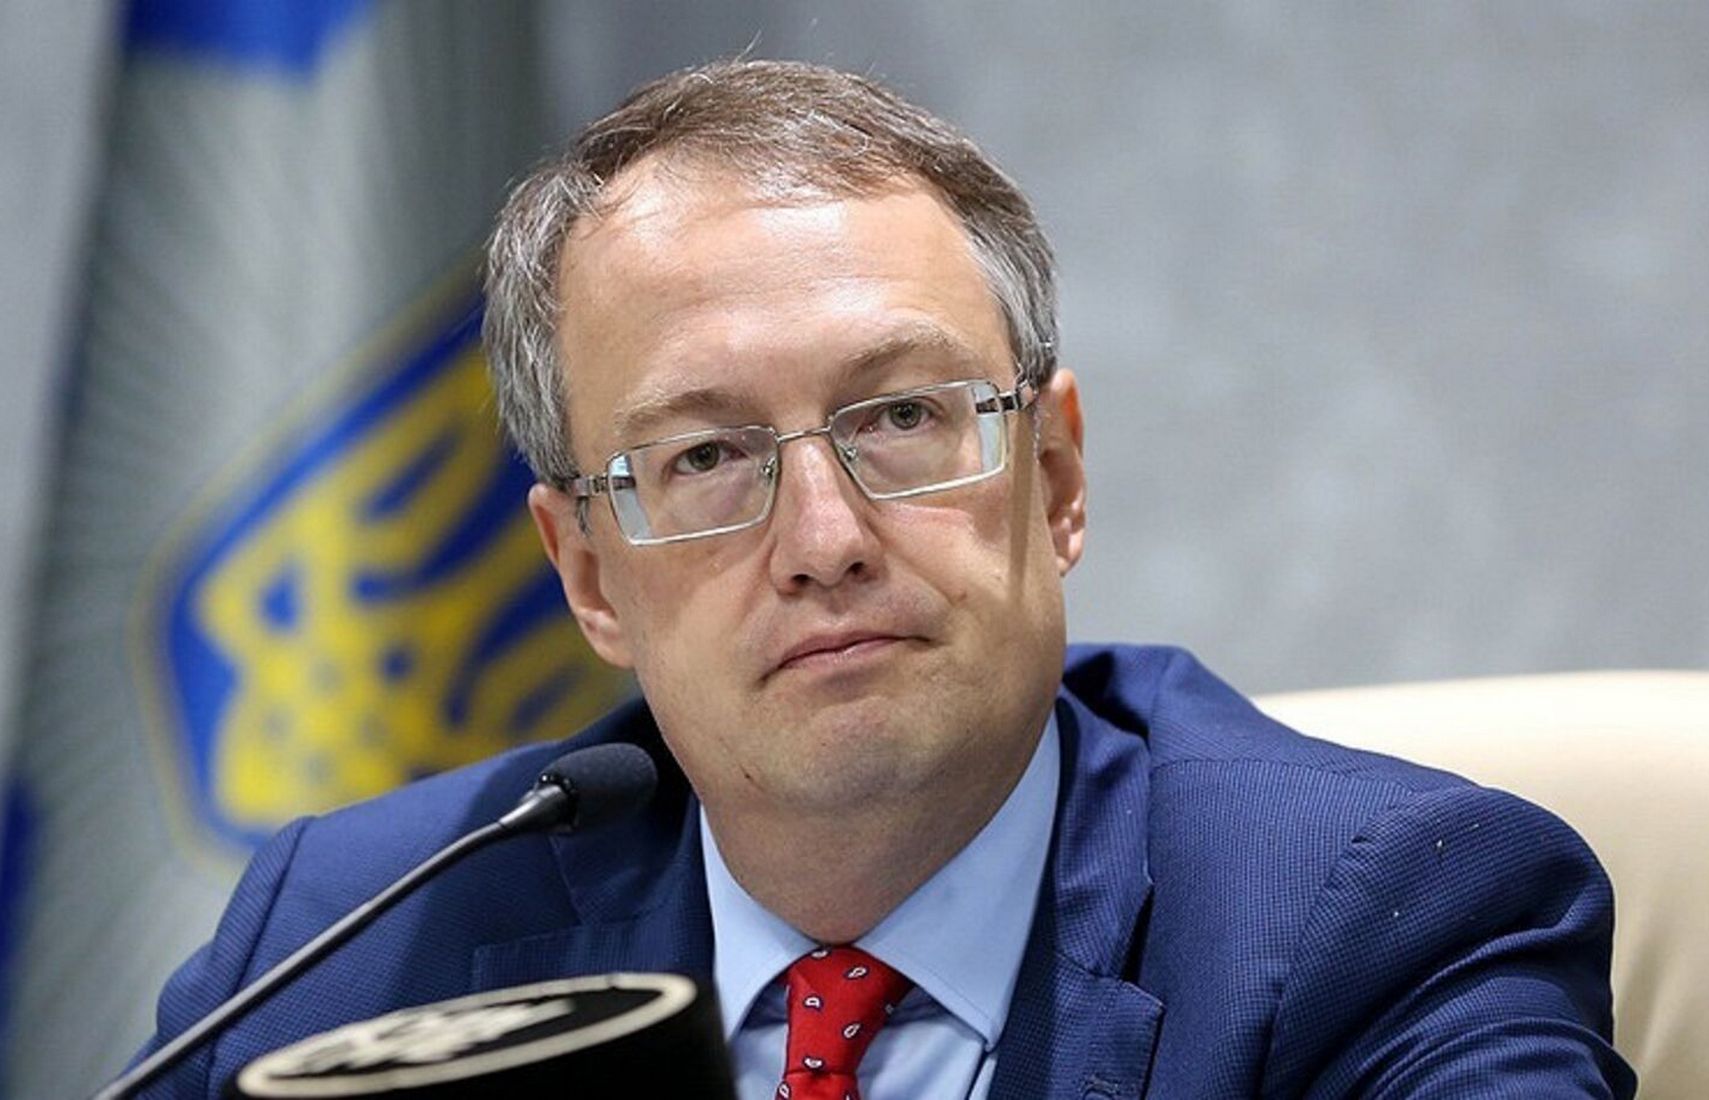 Геращенко рассказал, как подонки хотели навредить украинскому образованию при помощи порносайта